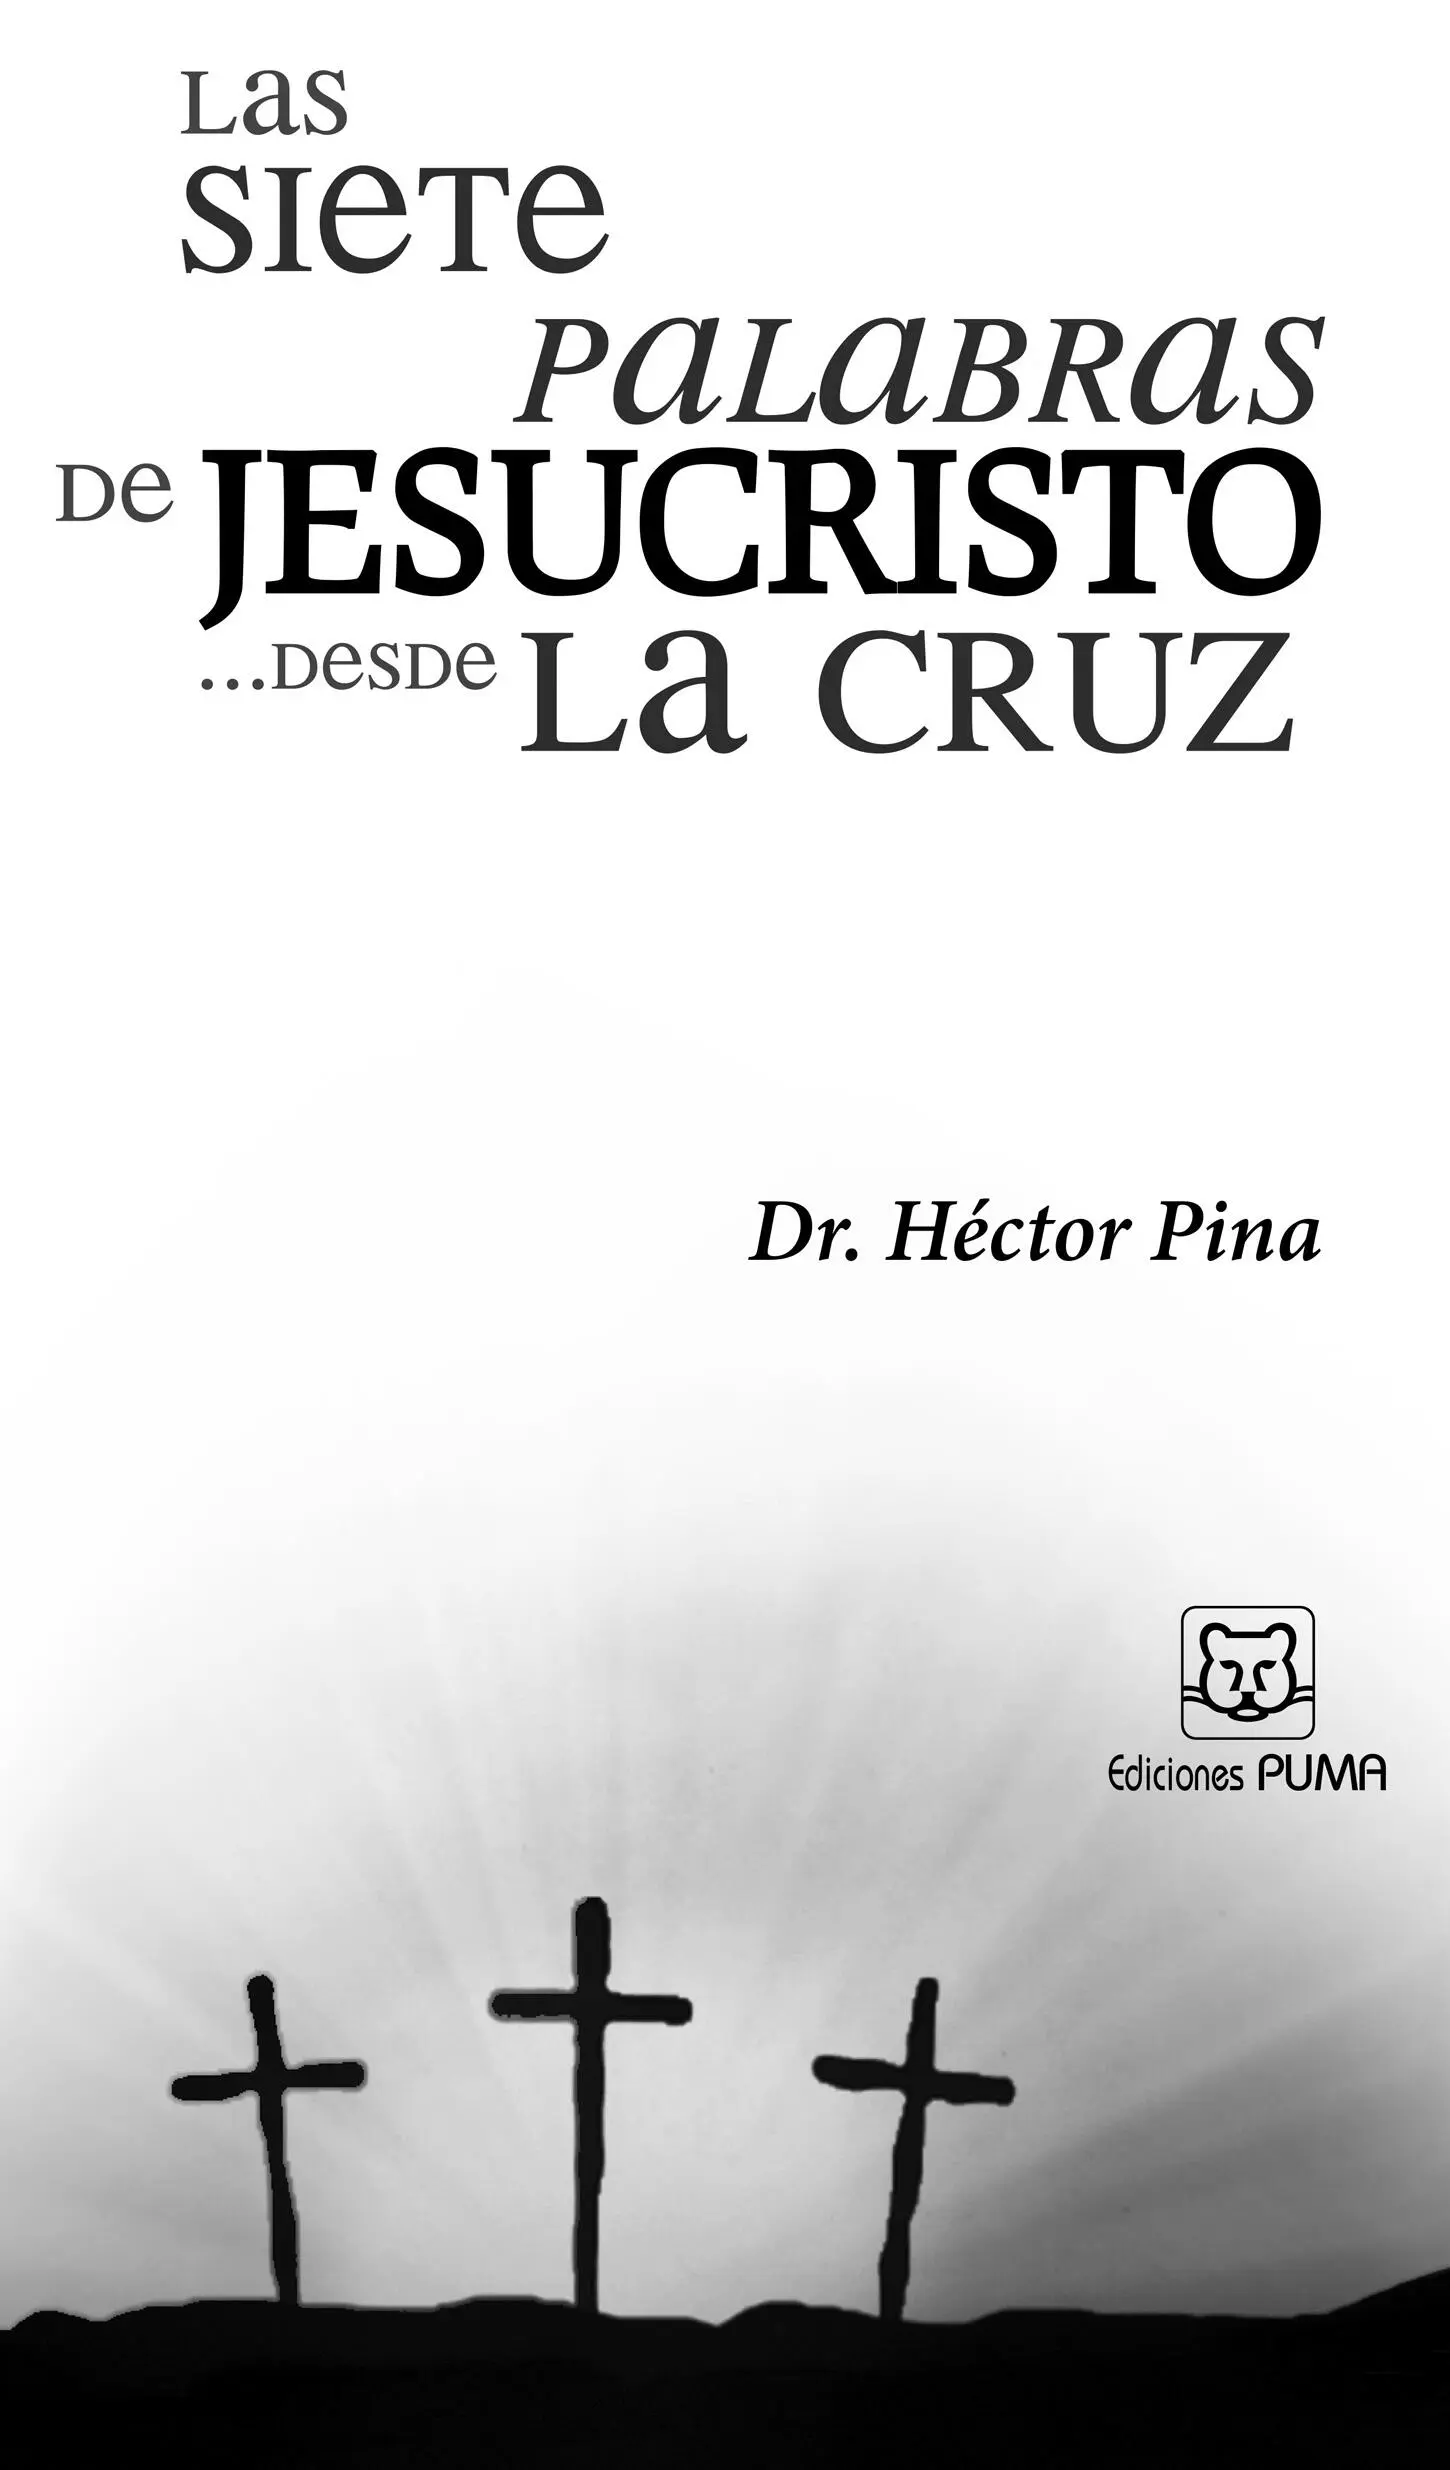 Las siete palabras de Jesucristo desde la cruz Héctor Pina del Castillo 2010 - фото 2